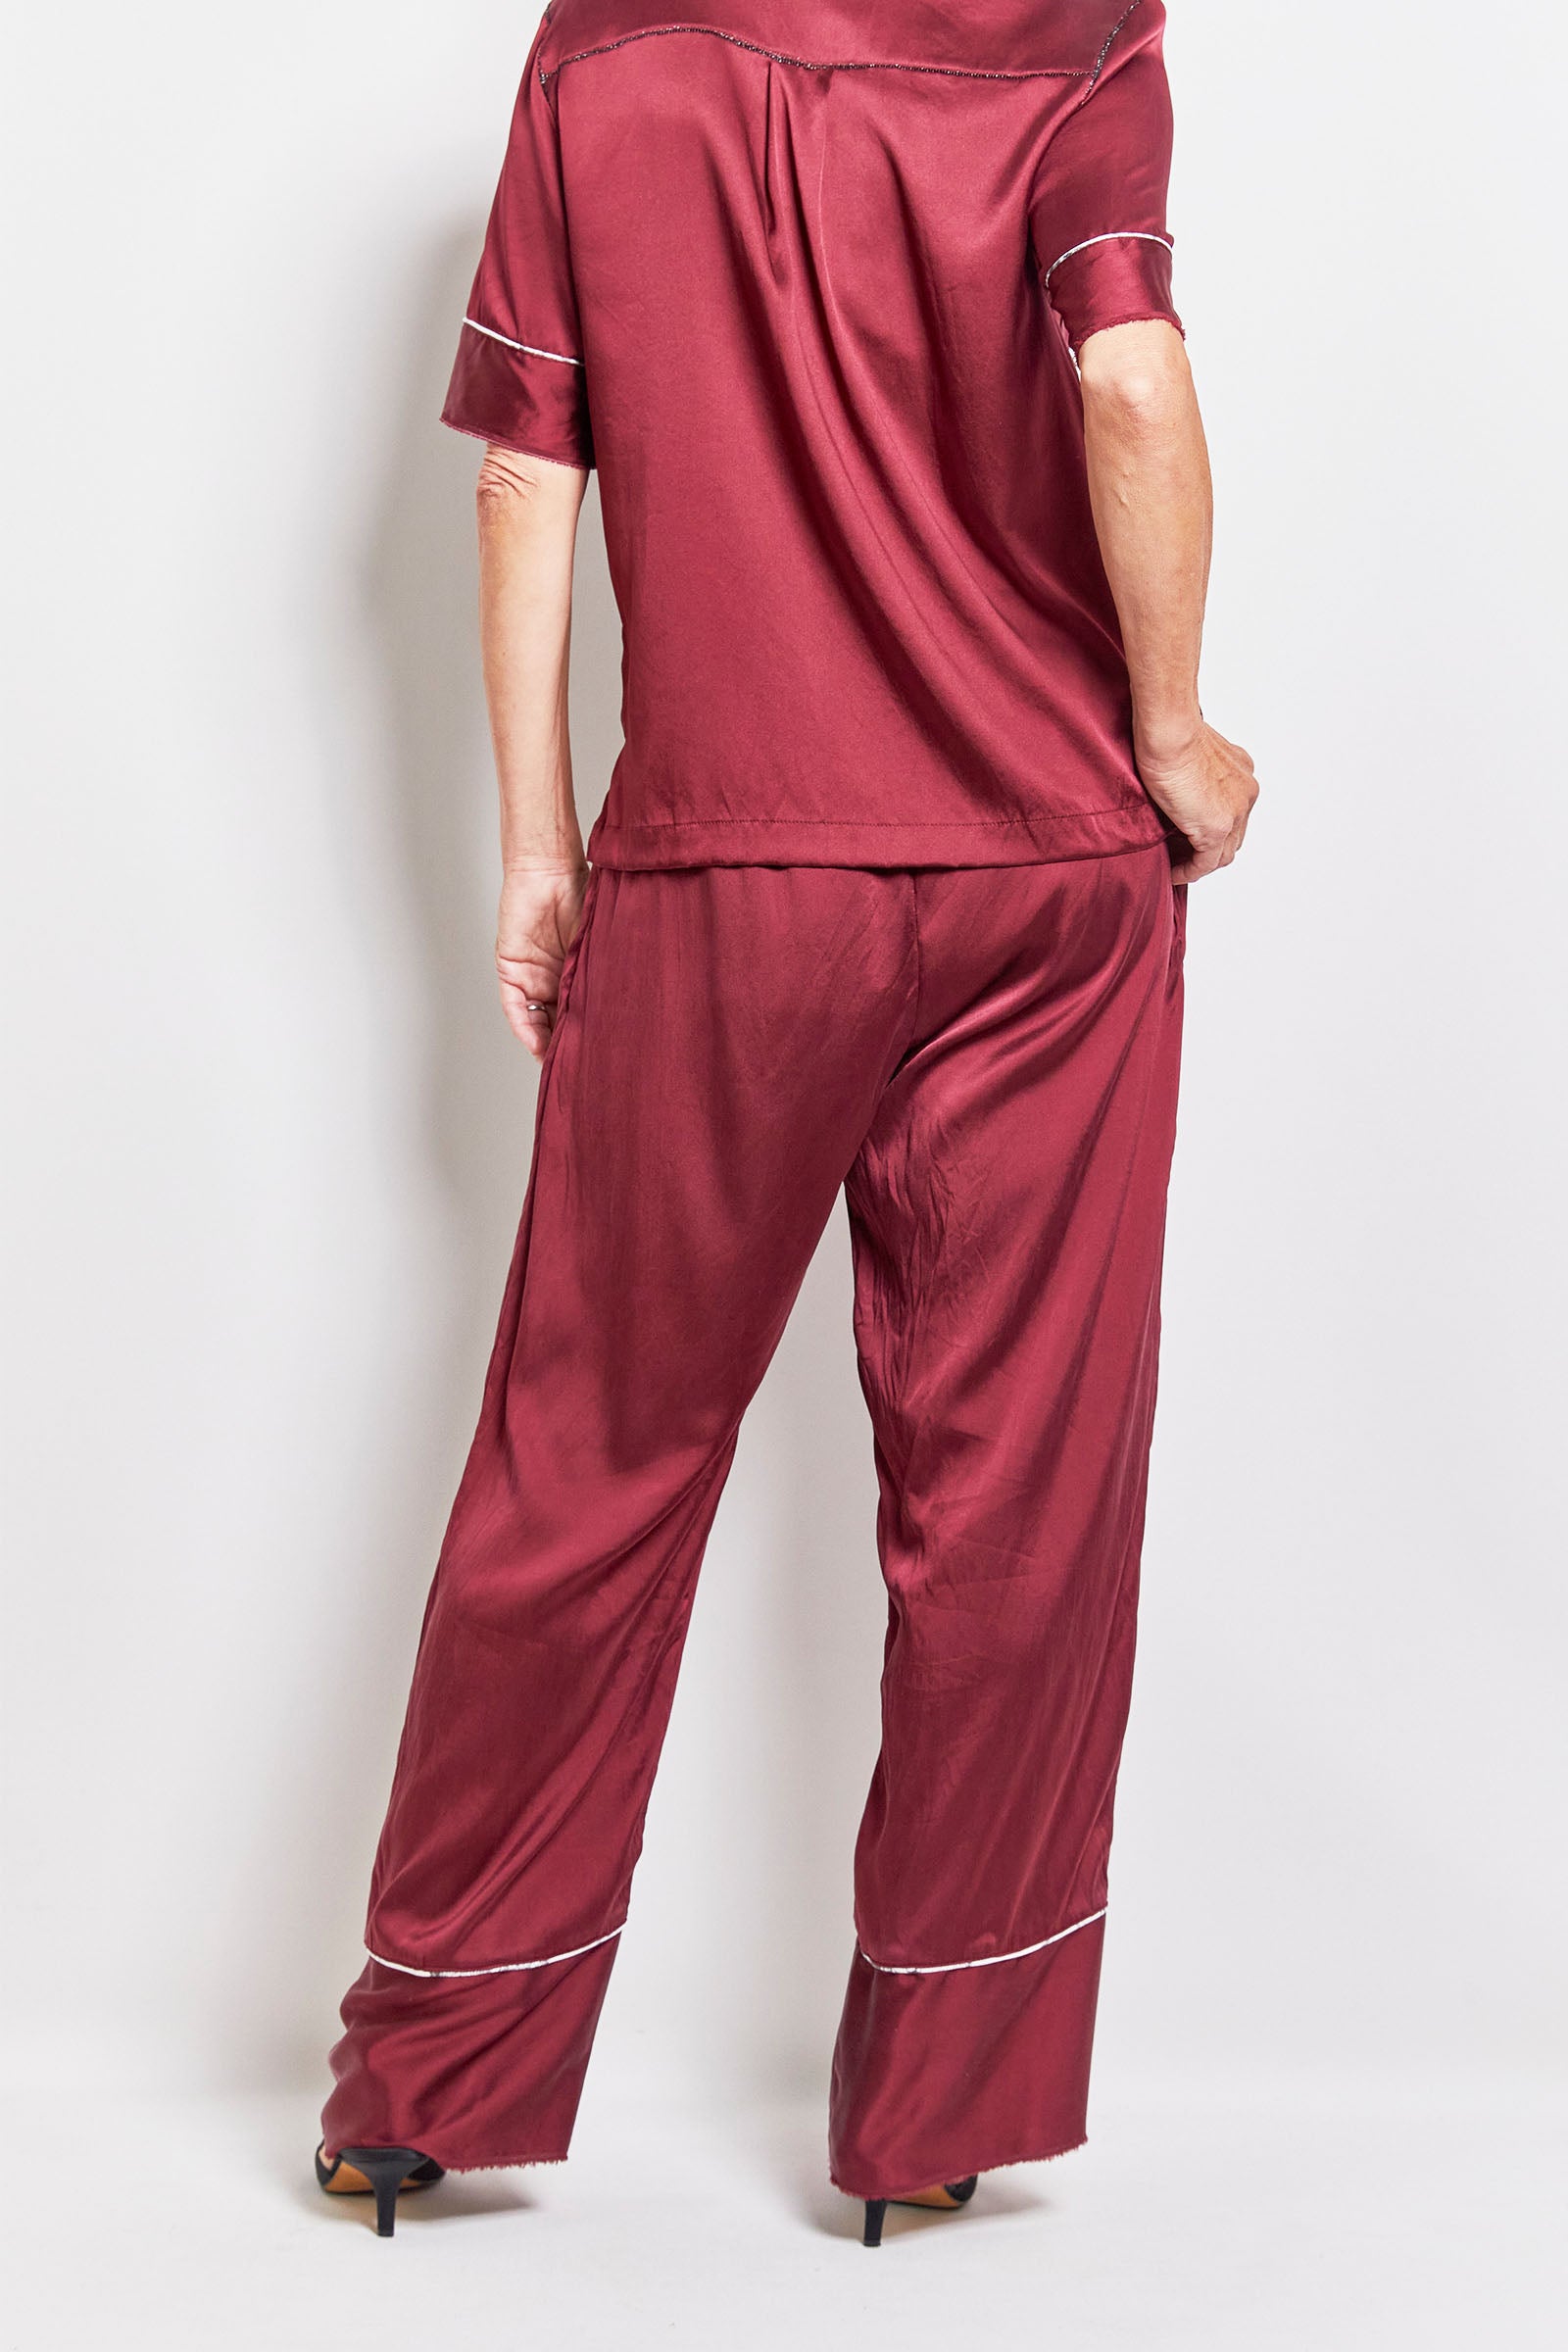 byfreer&#39;s cyril &amp; friday shiraz daytime silk pyjama set.